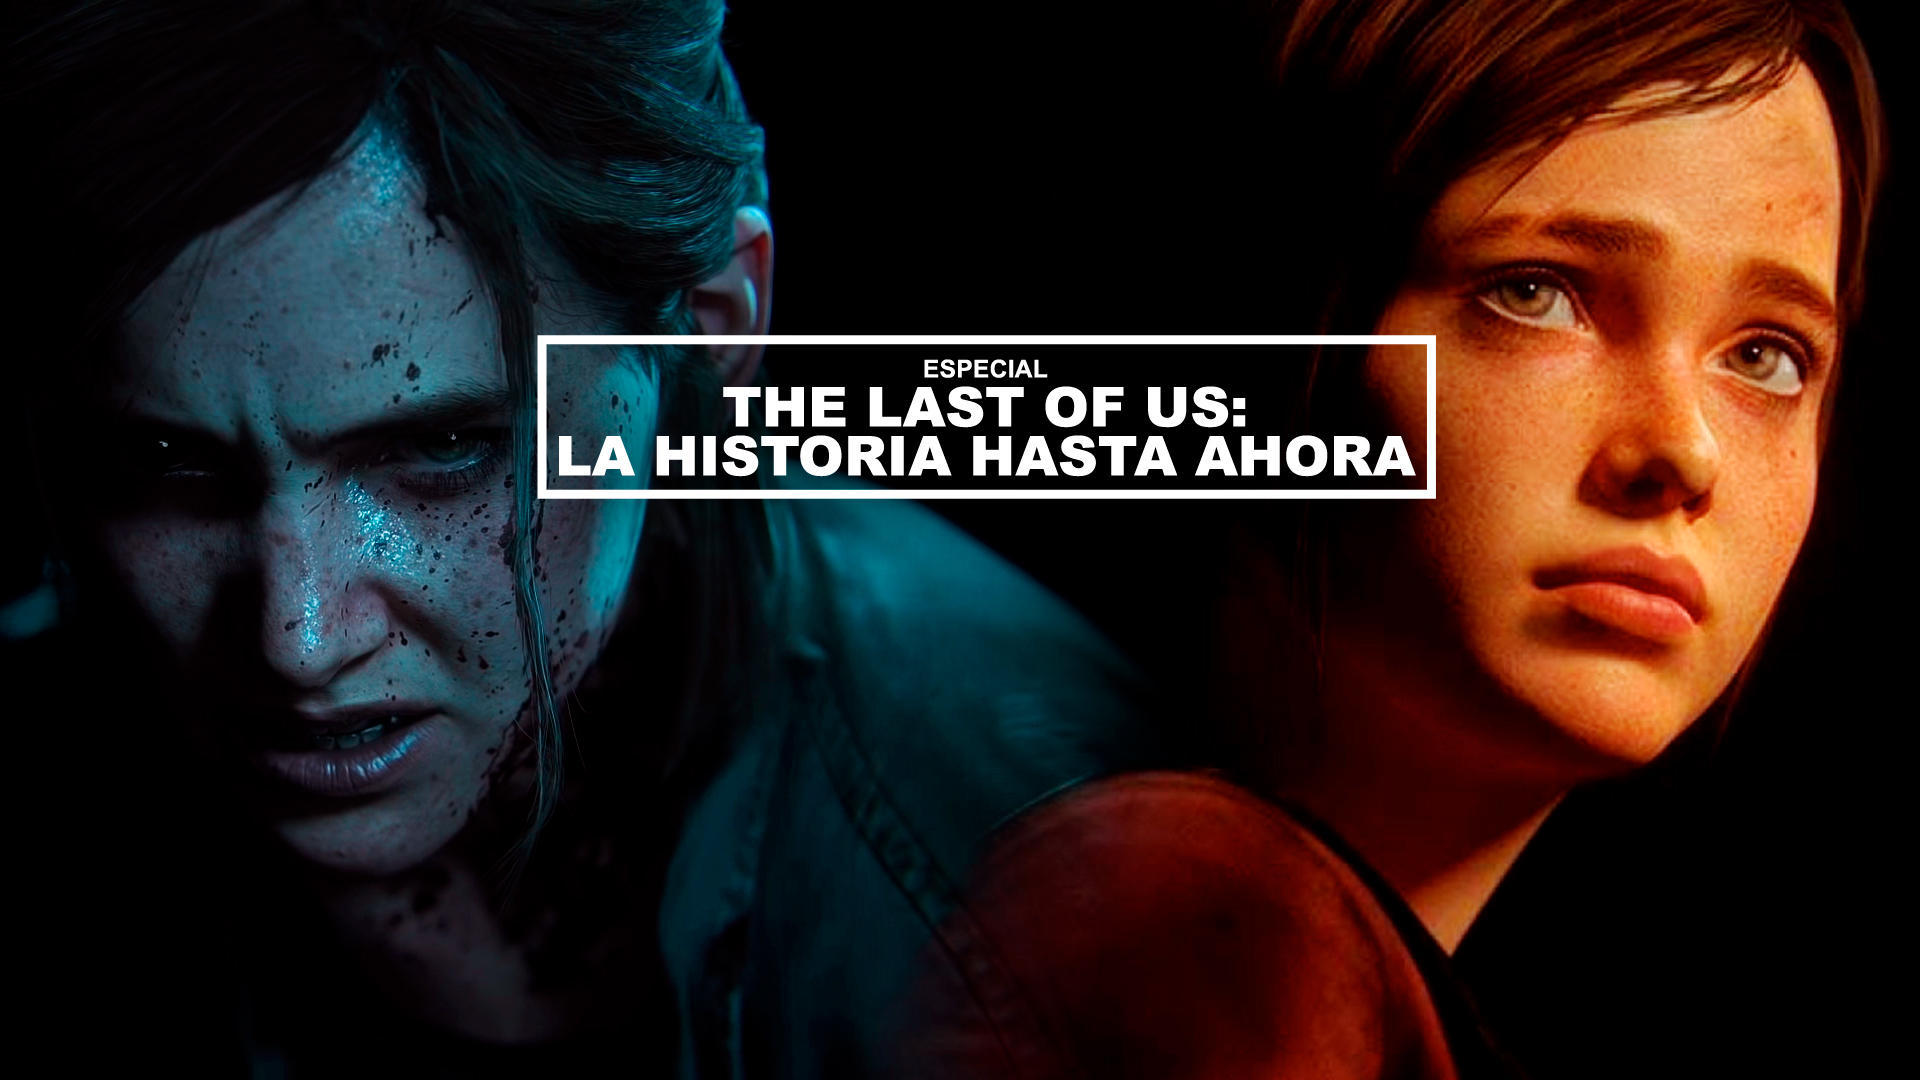 The Last of Us: La historia hasta ahora